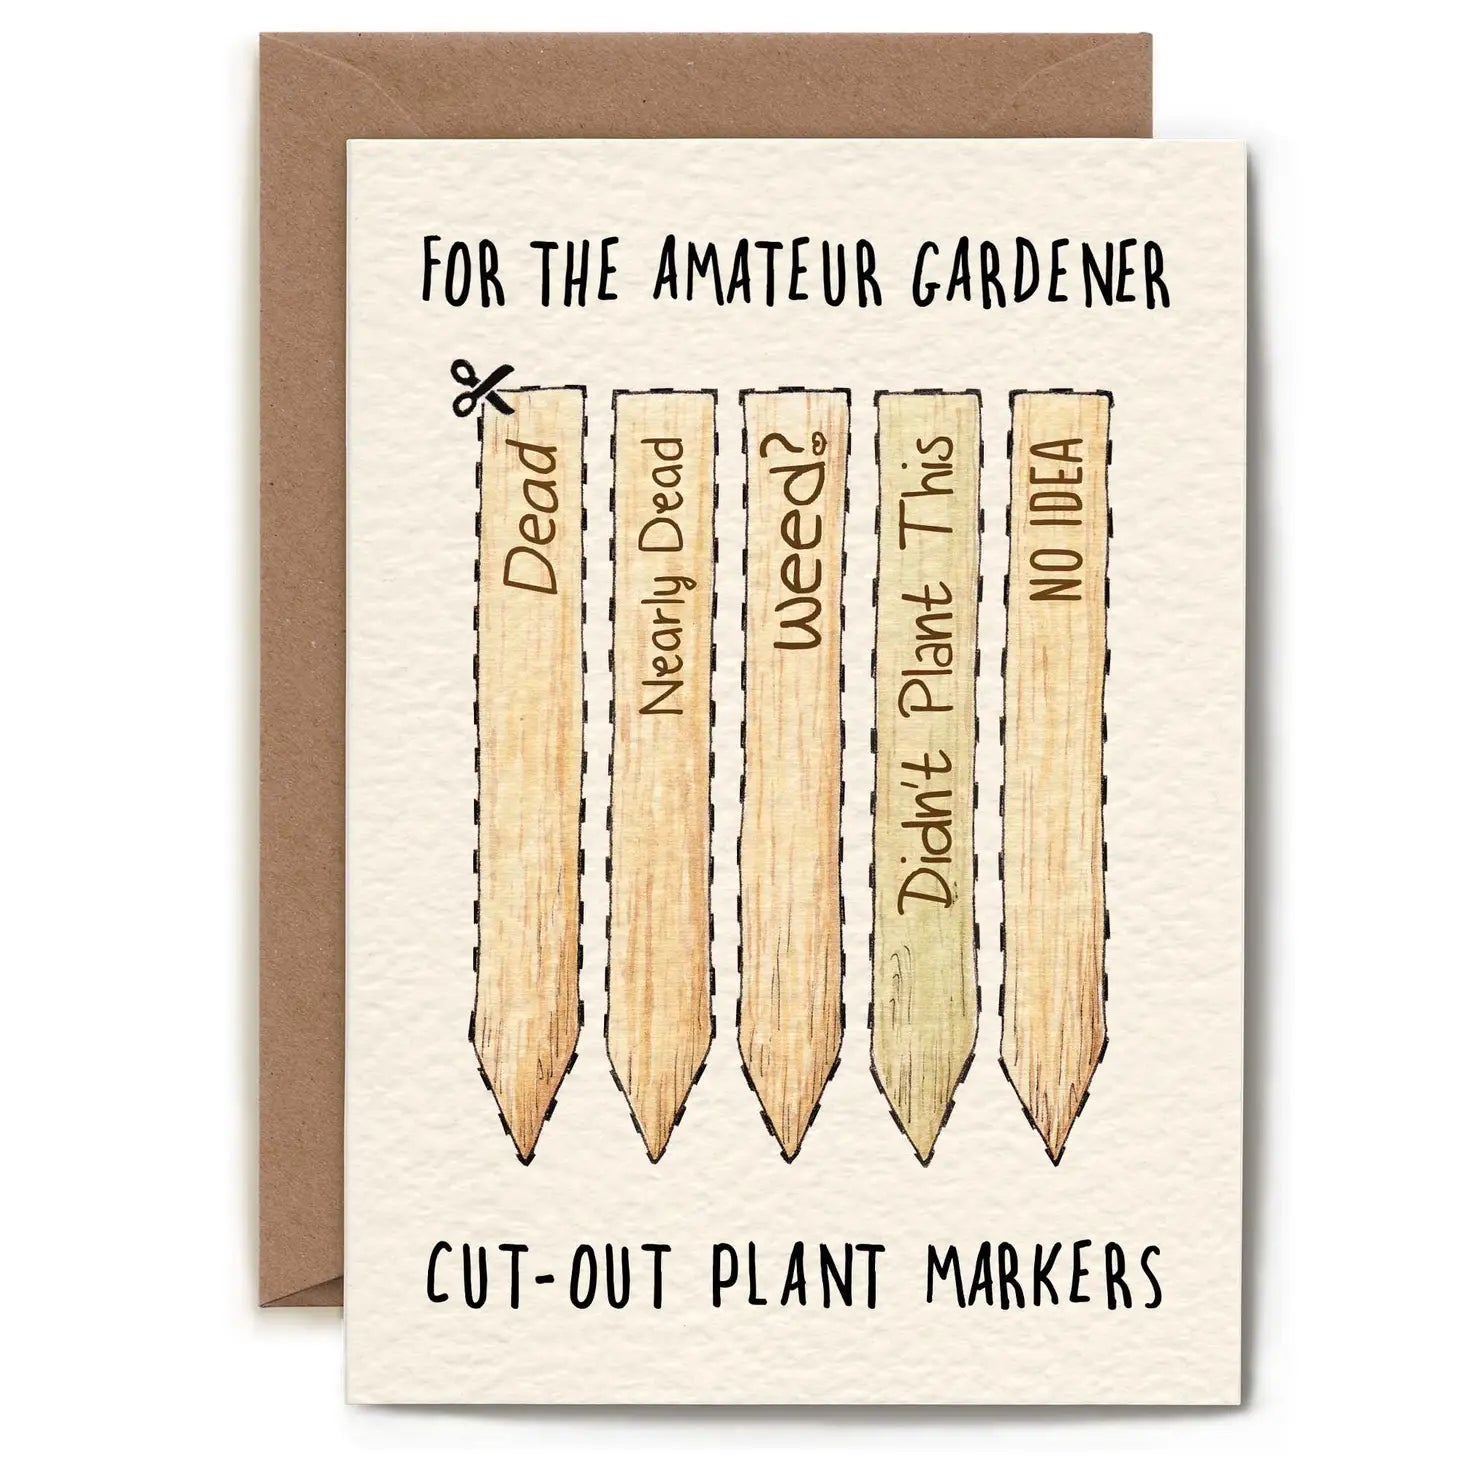 Wenskaart “Amateur Gardener”